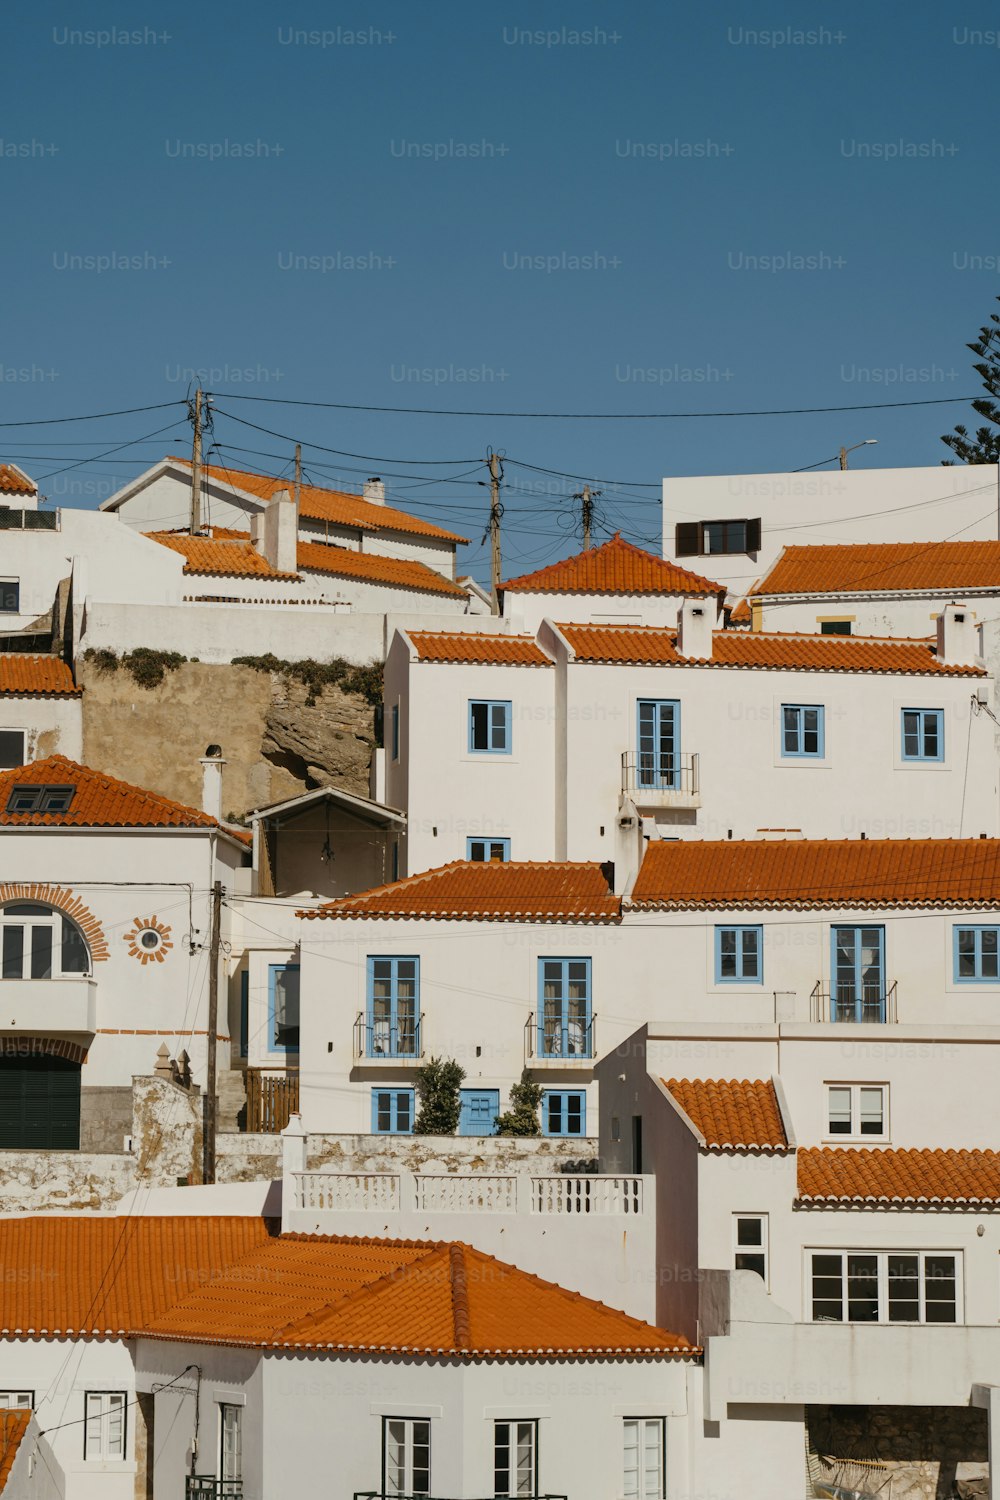 Un groupe de bâtiments blancs aux toits orange